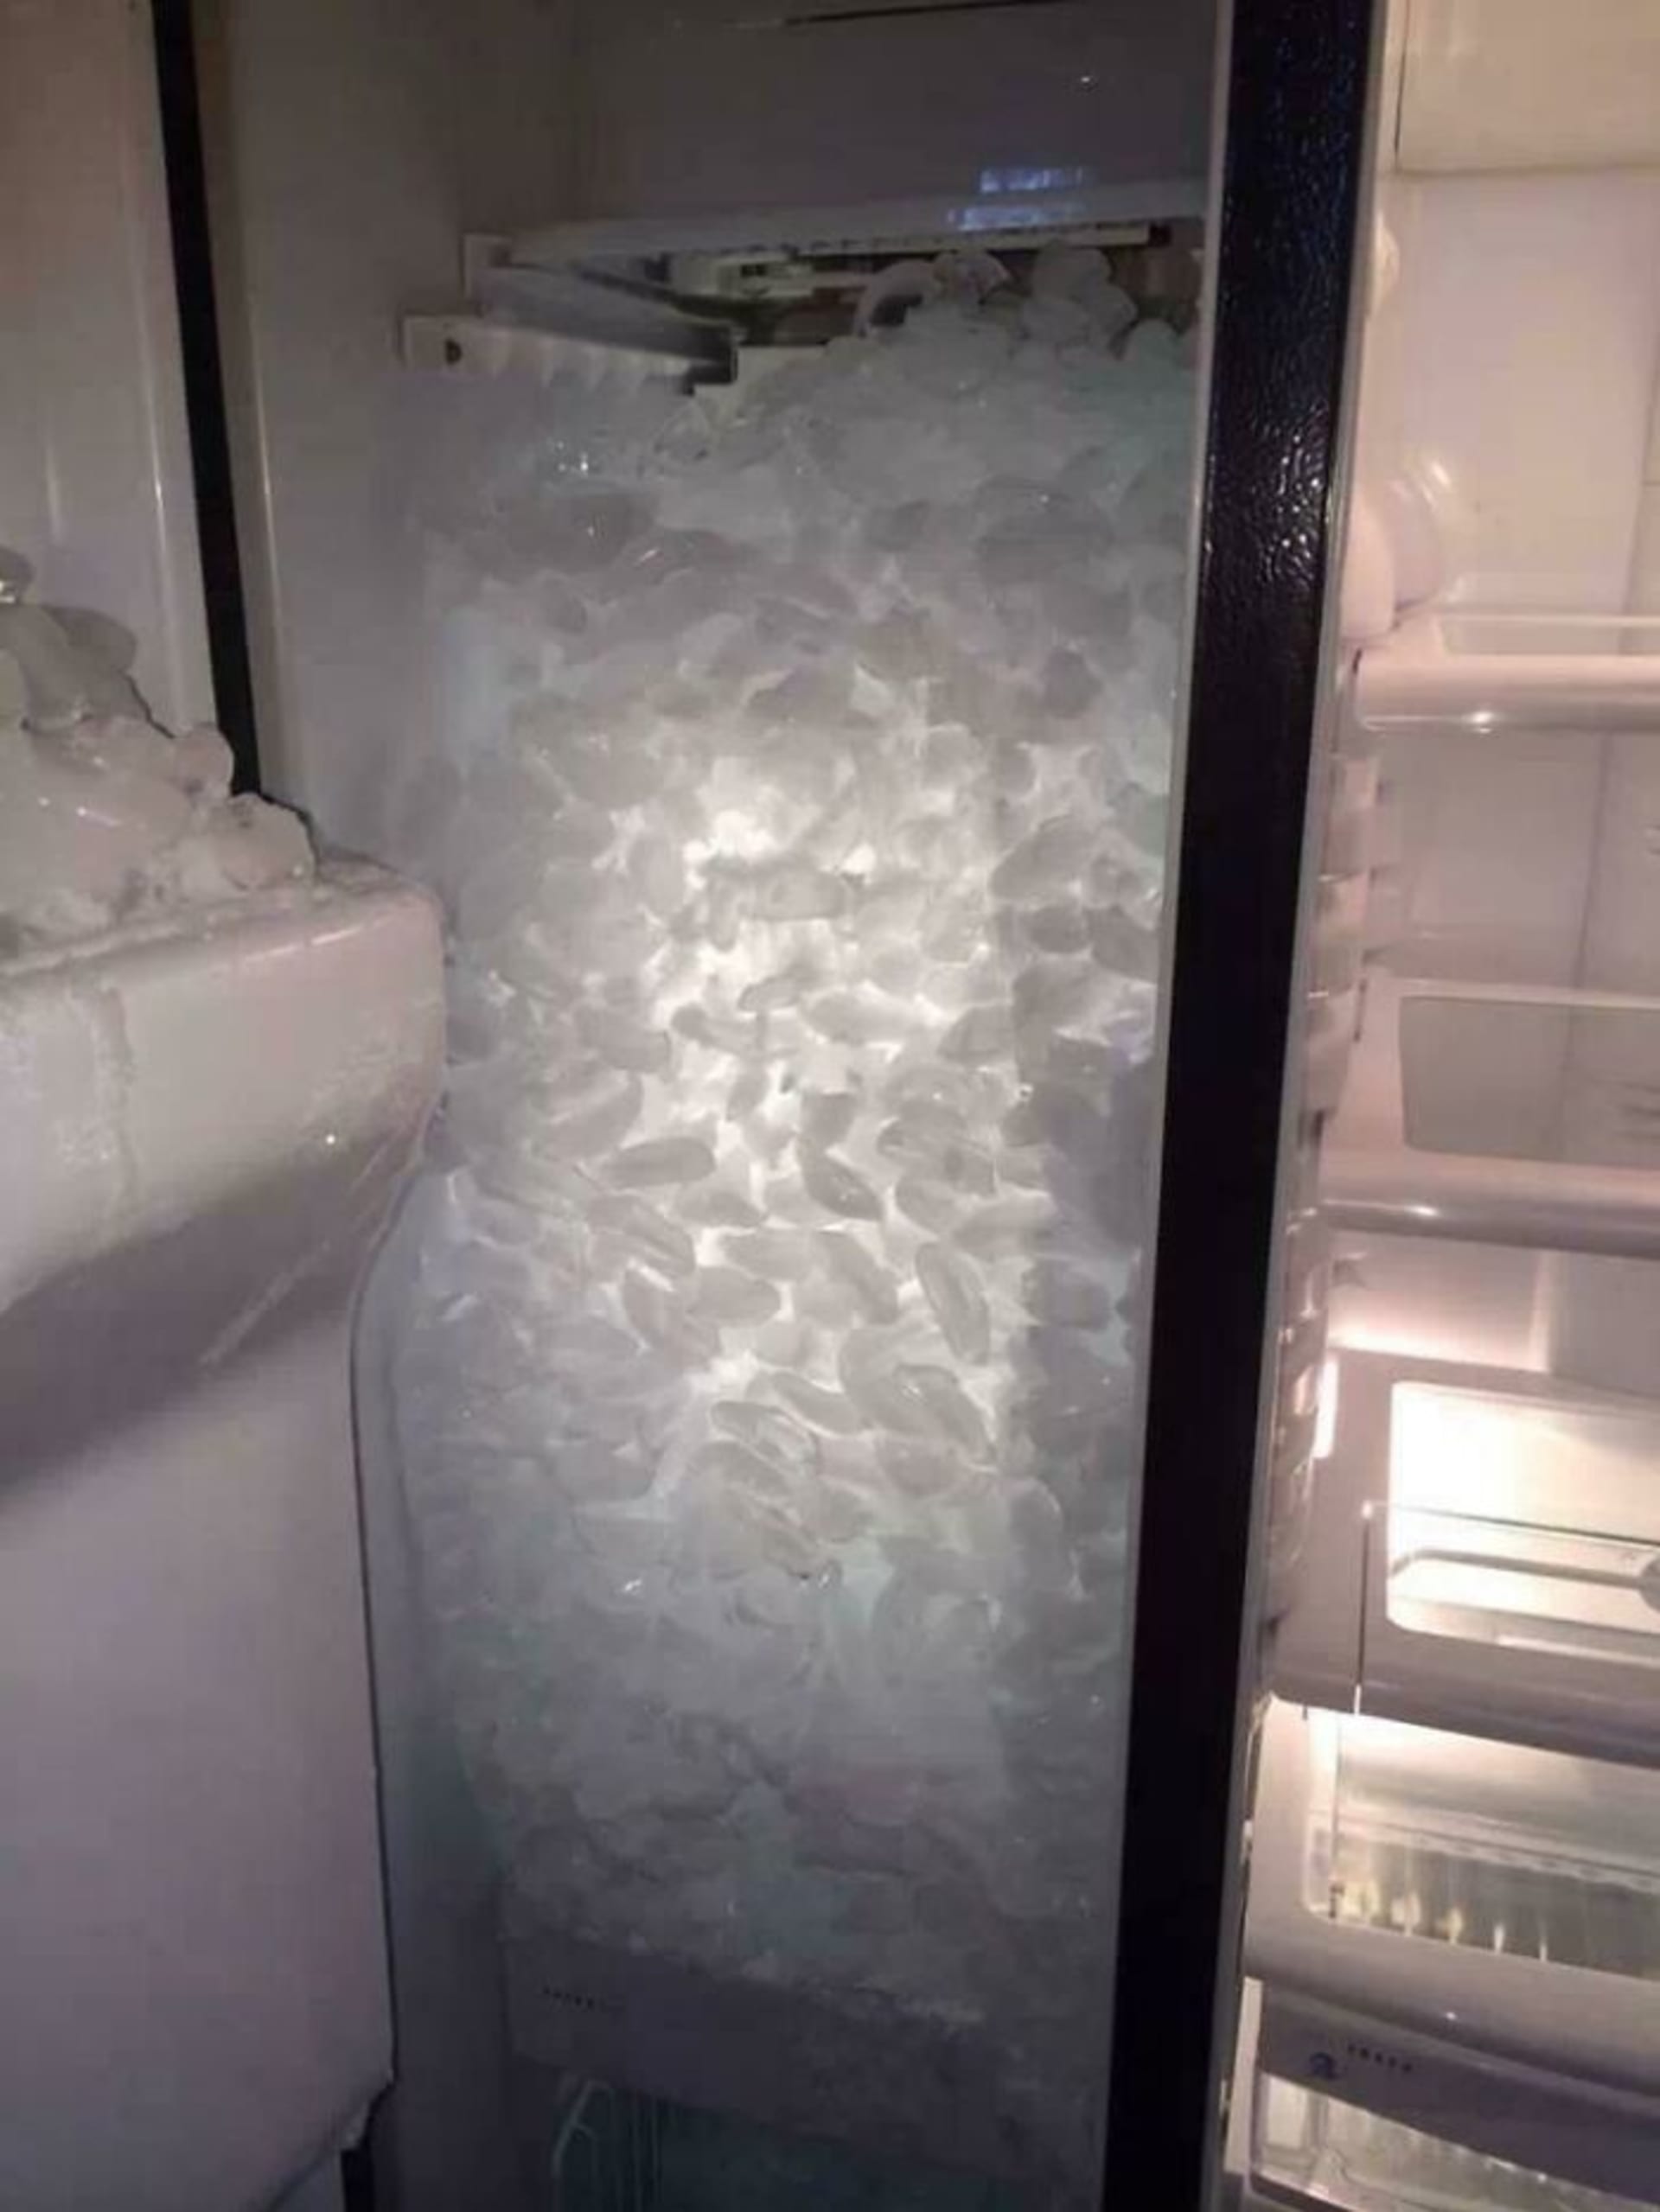 Bizarní nálezy v lednicích